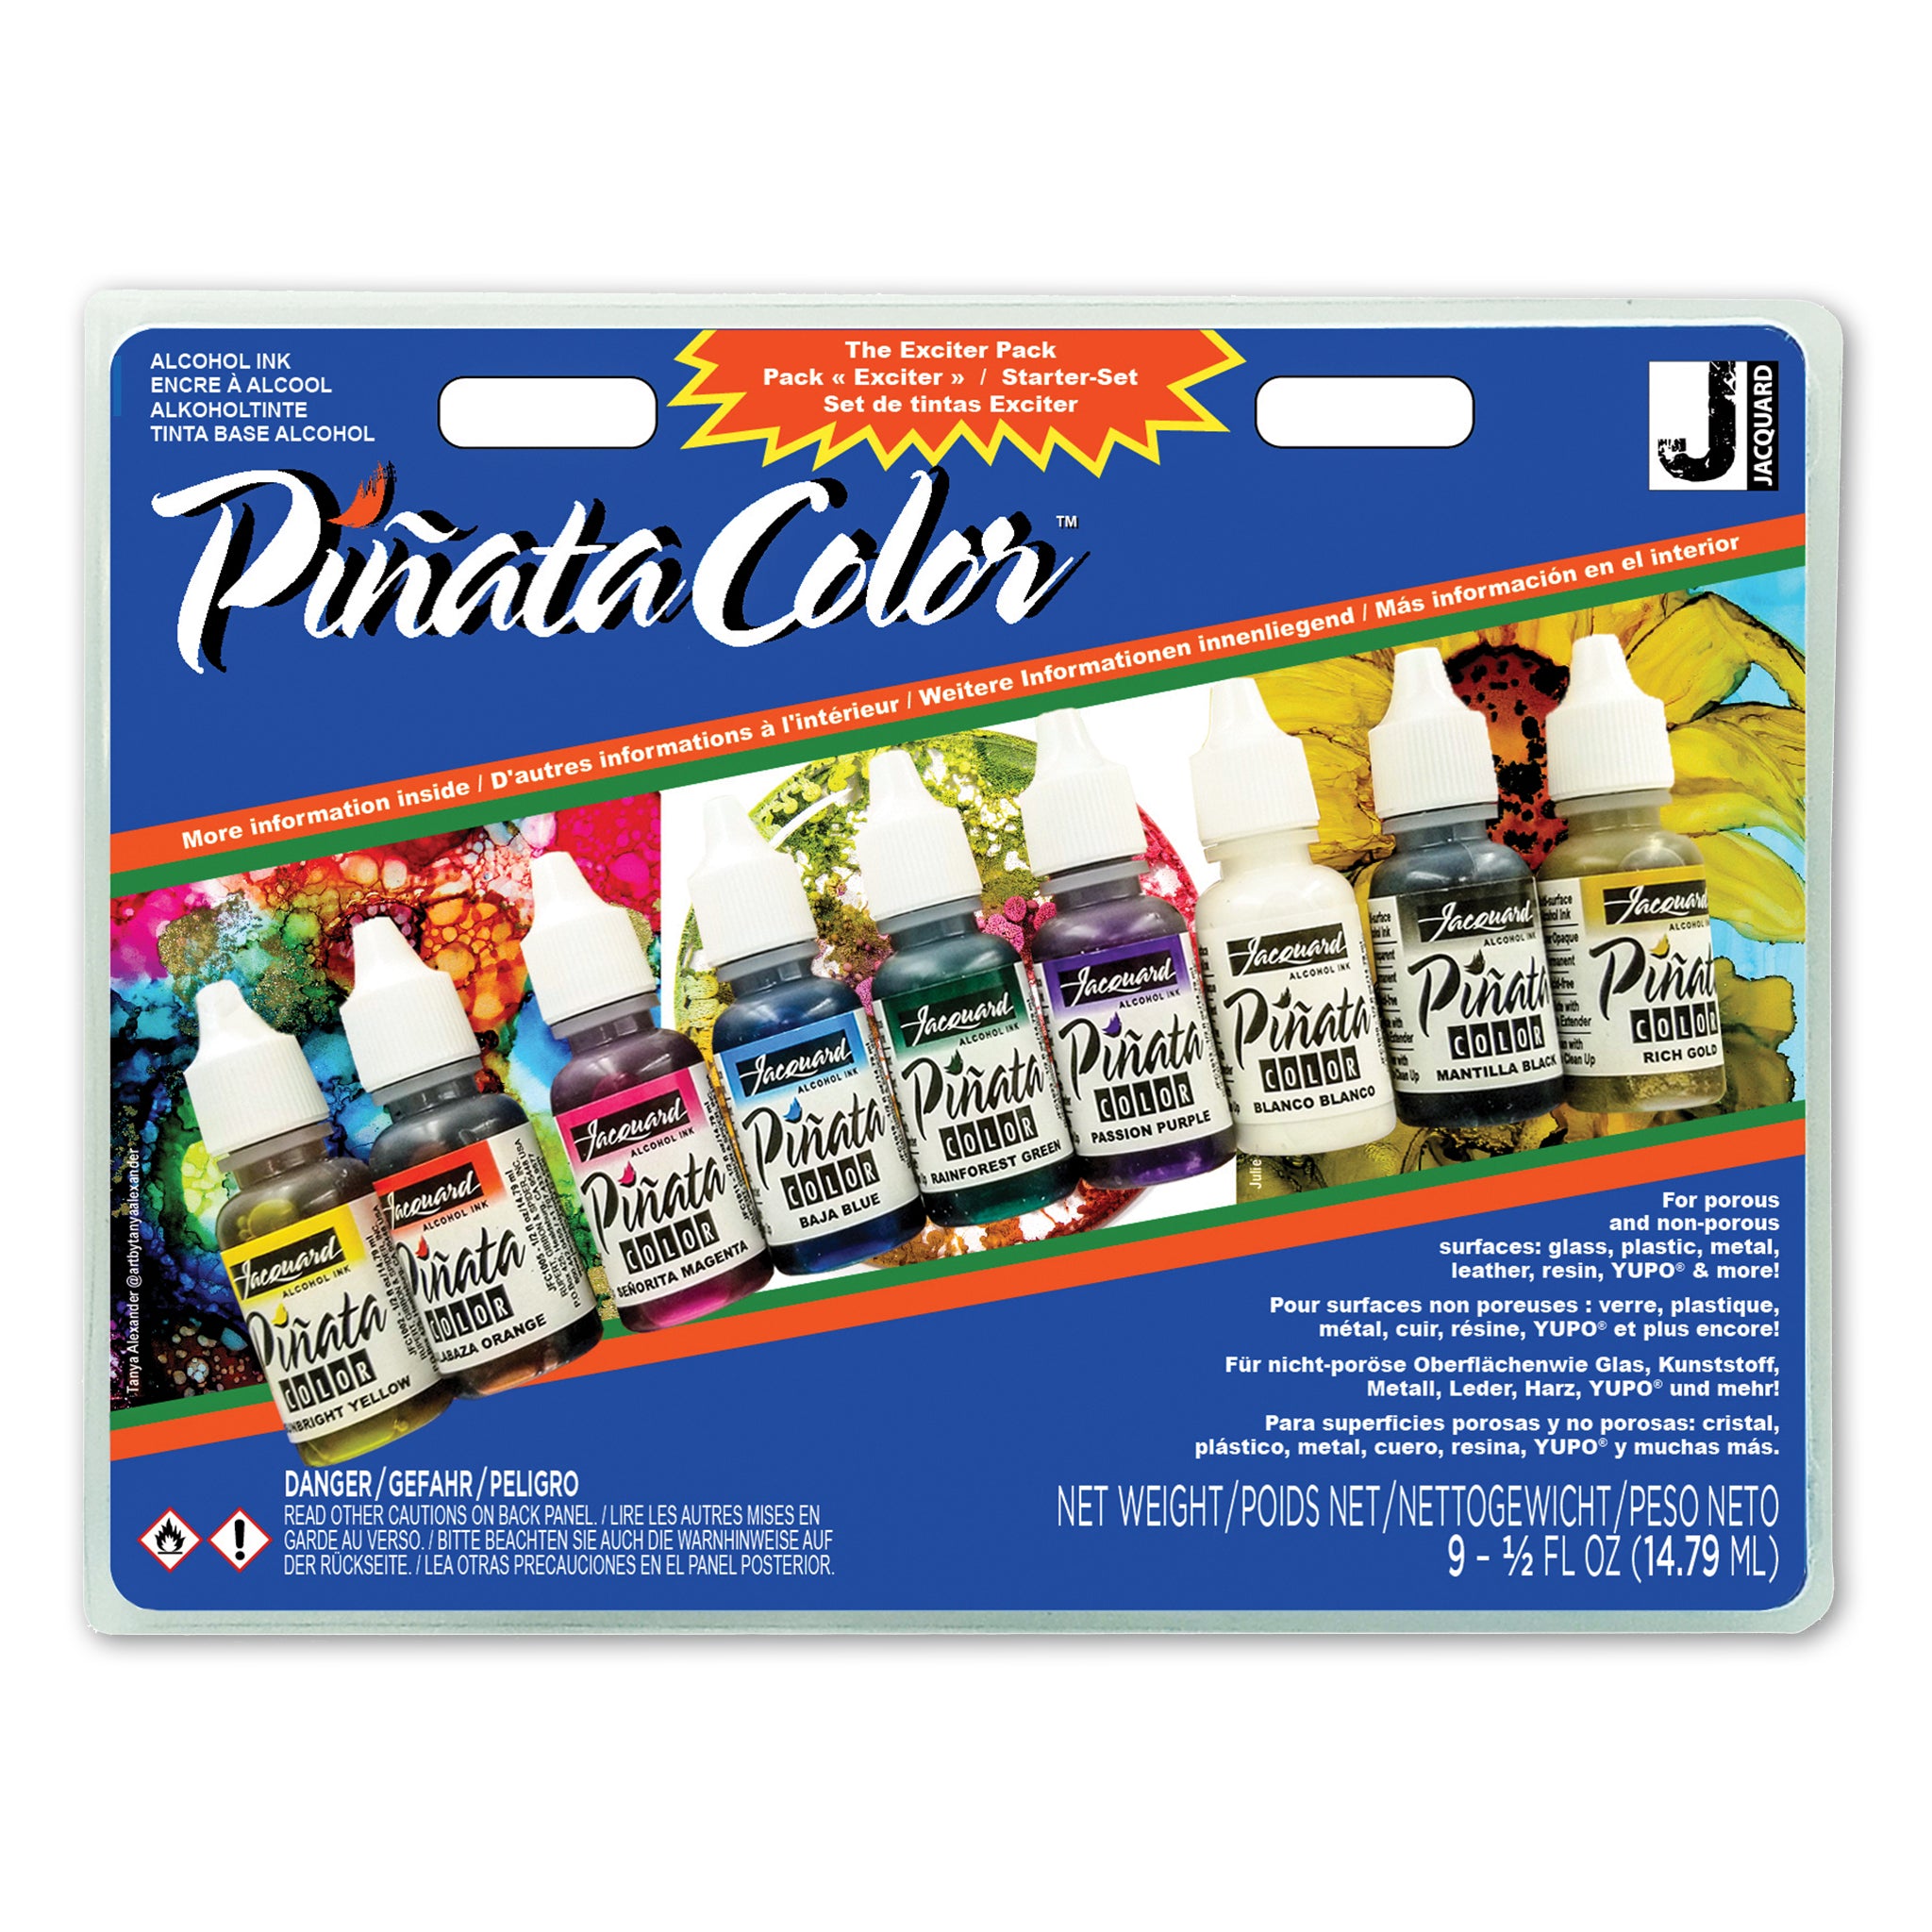 Piñata Colors Exciter Pack